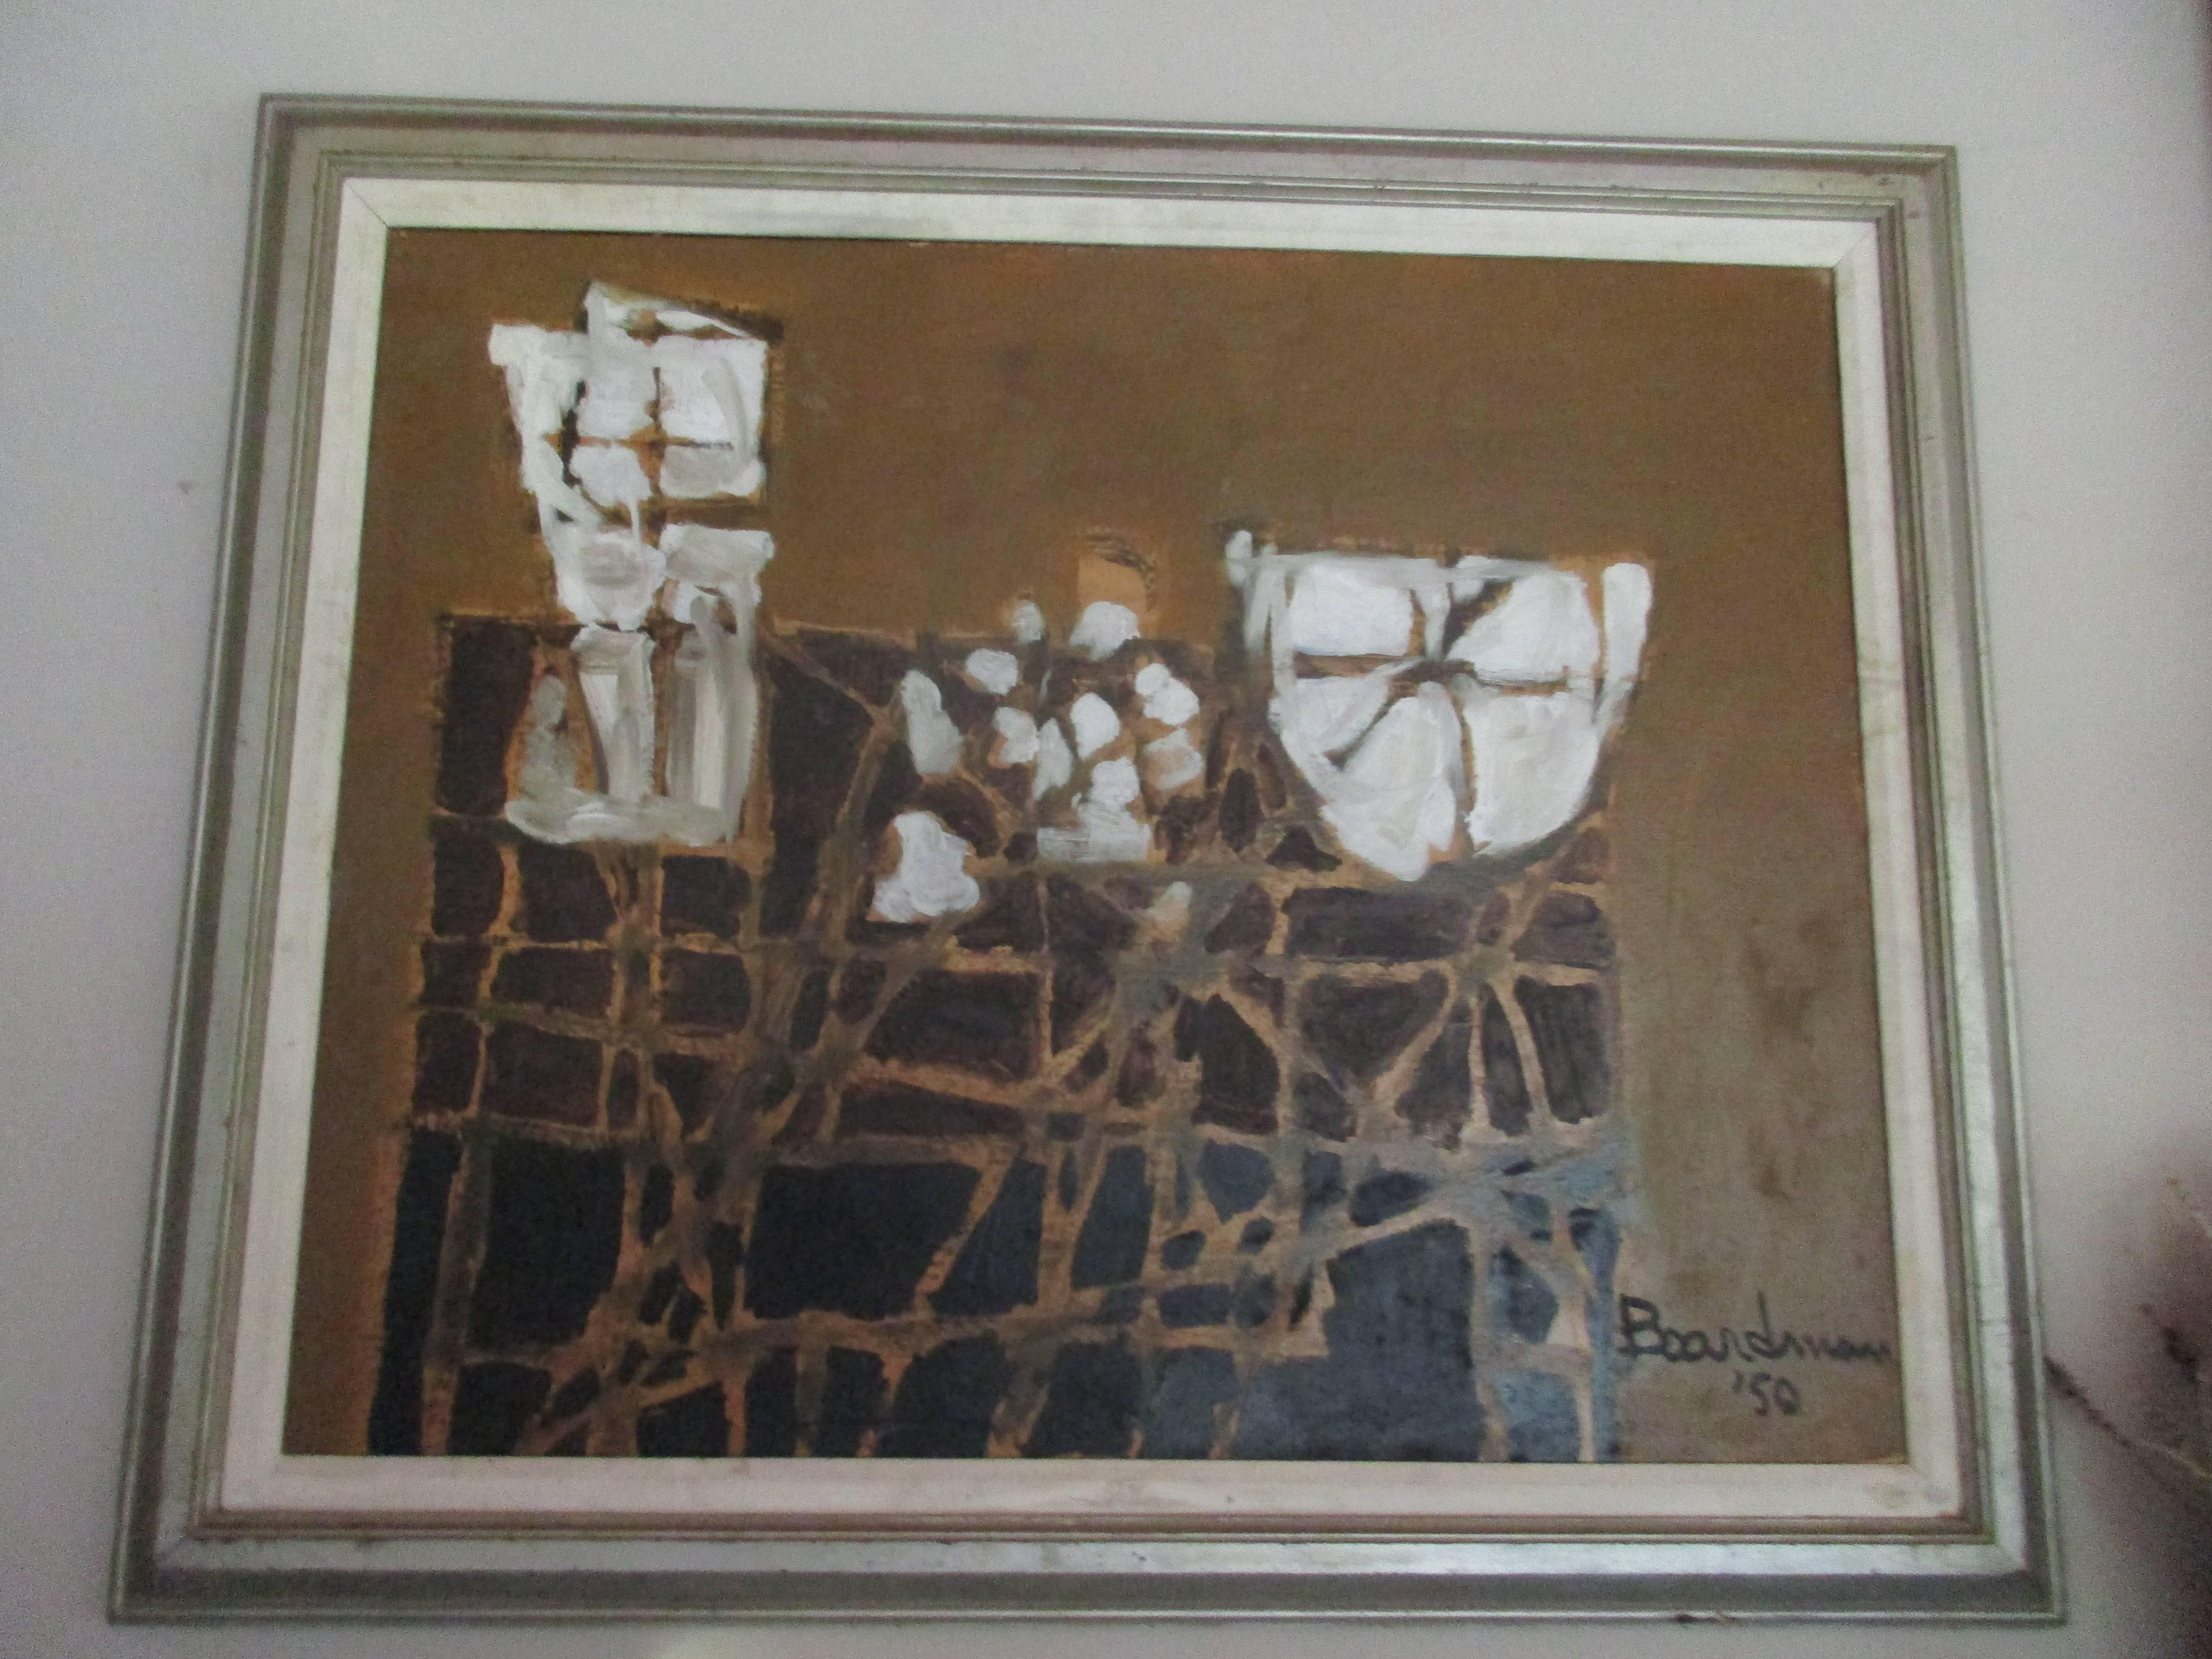 Huile sur toile semi-abstraite du milieu du siècle dernier, datée '50, signée Boardman dans un cadre en bois de l'époque